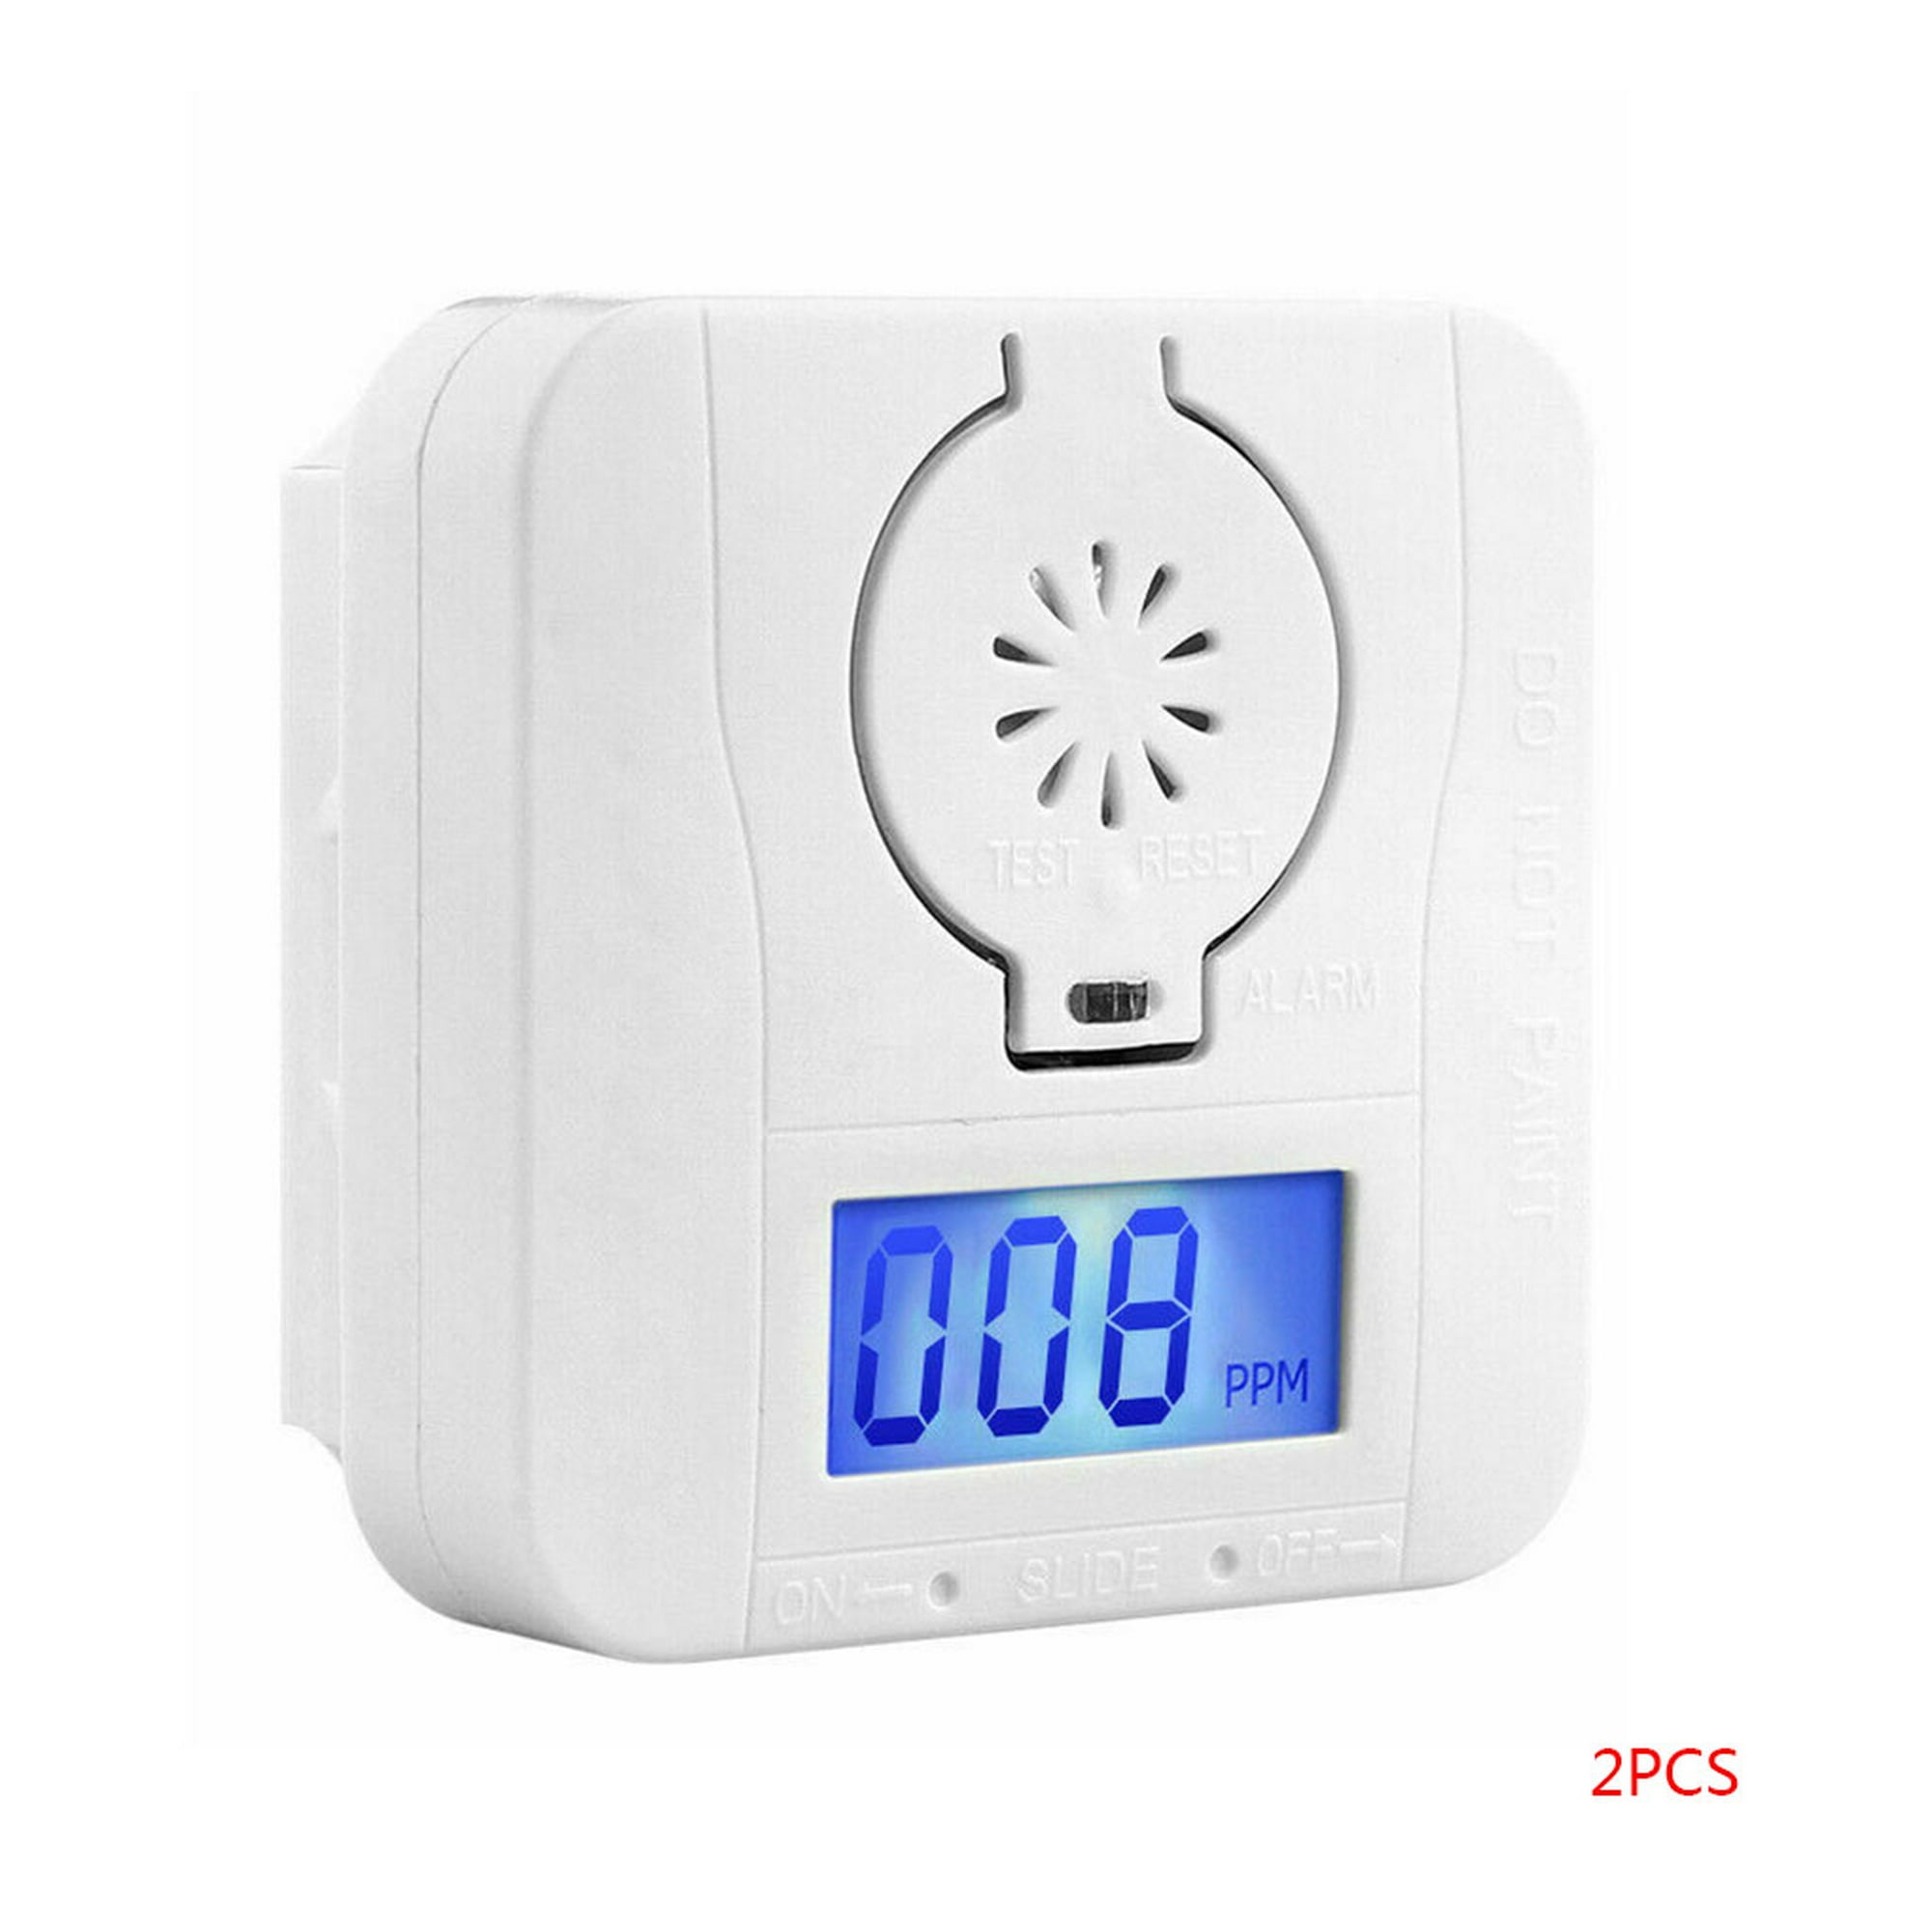 Detector de monóxido de carbono, detector de alarma de CO con pantalla  digital y alarma de sonido para el hogar 2pcs